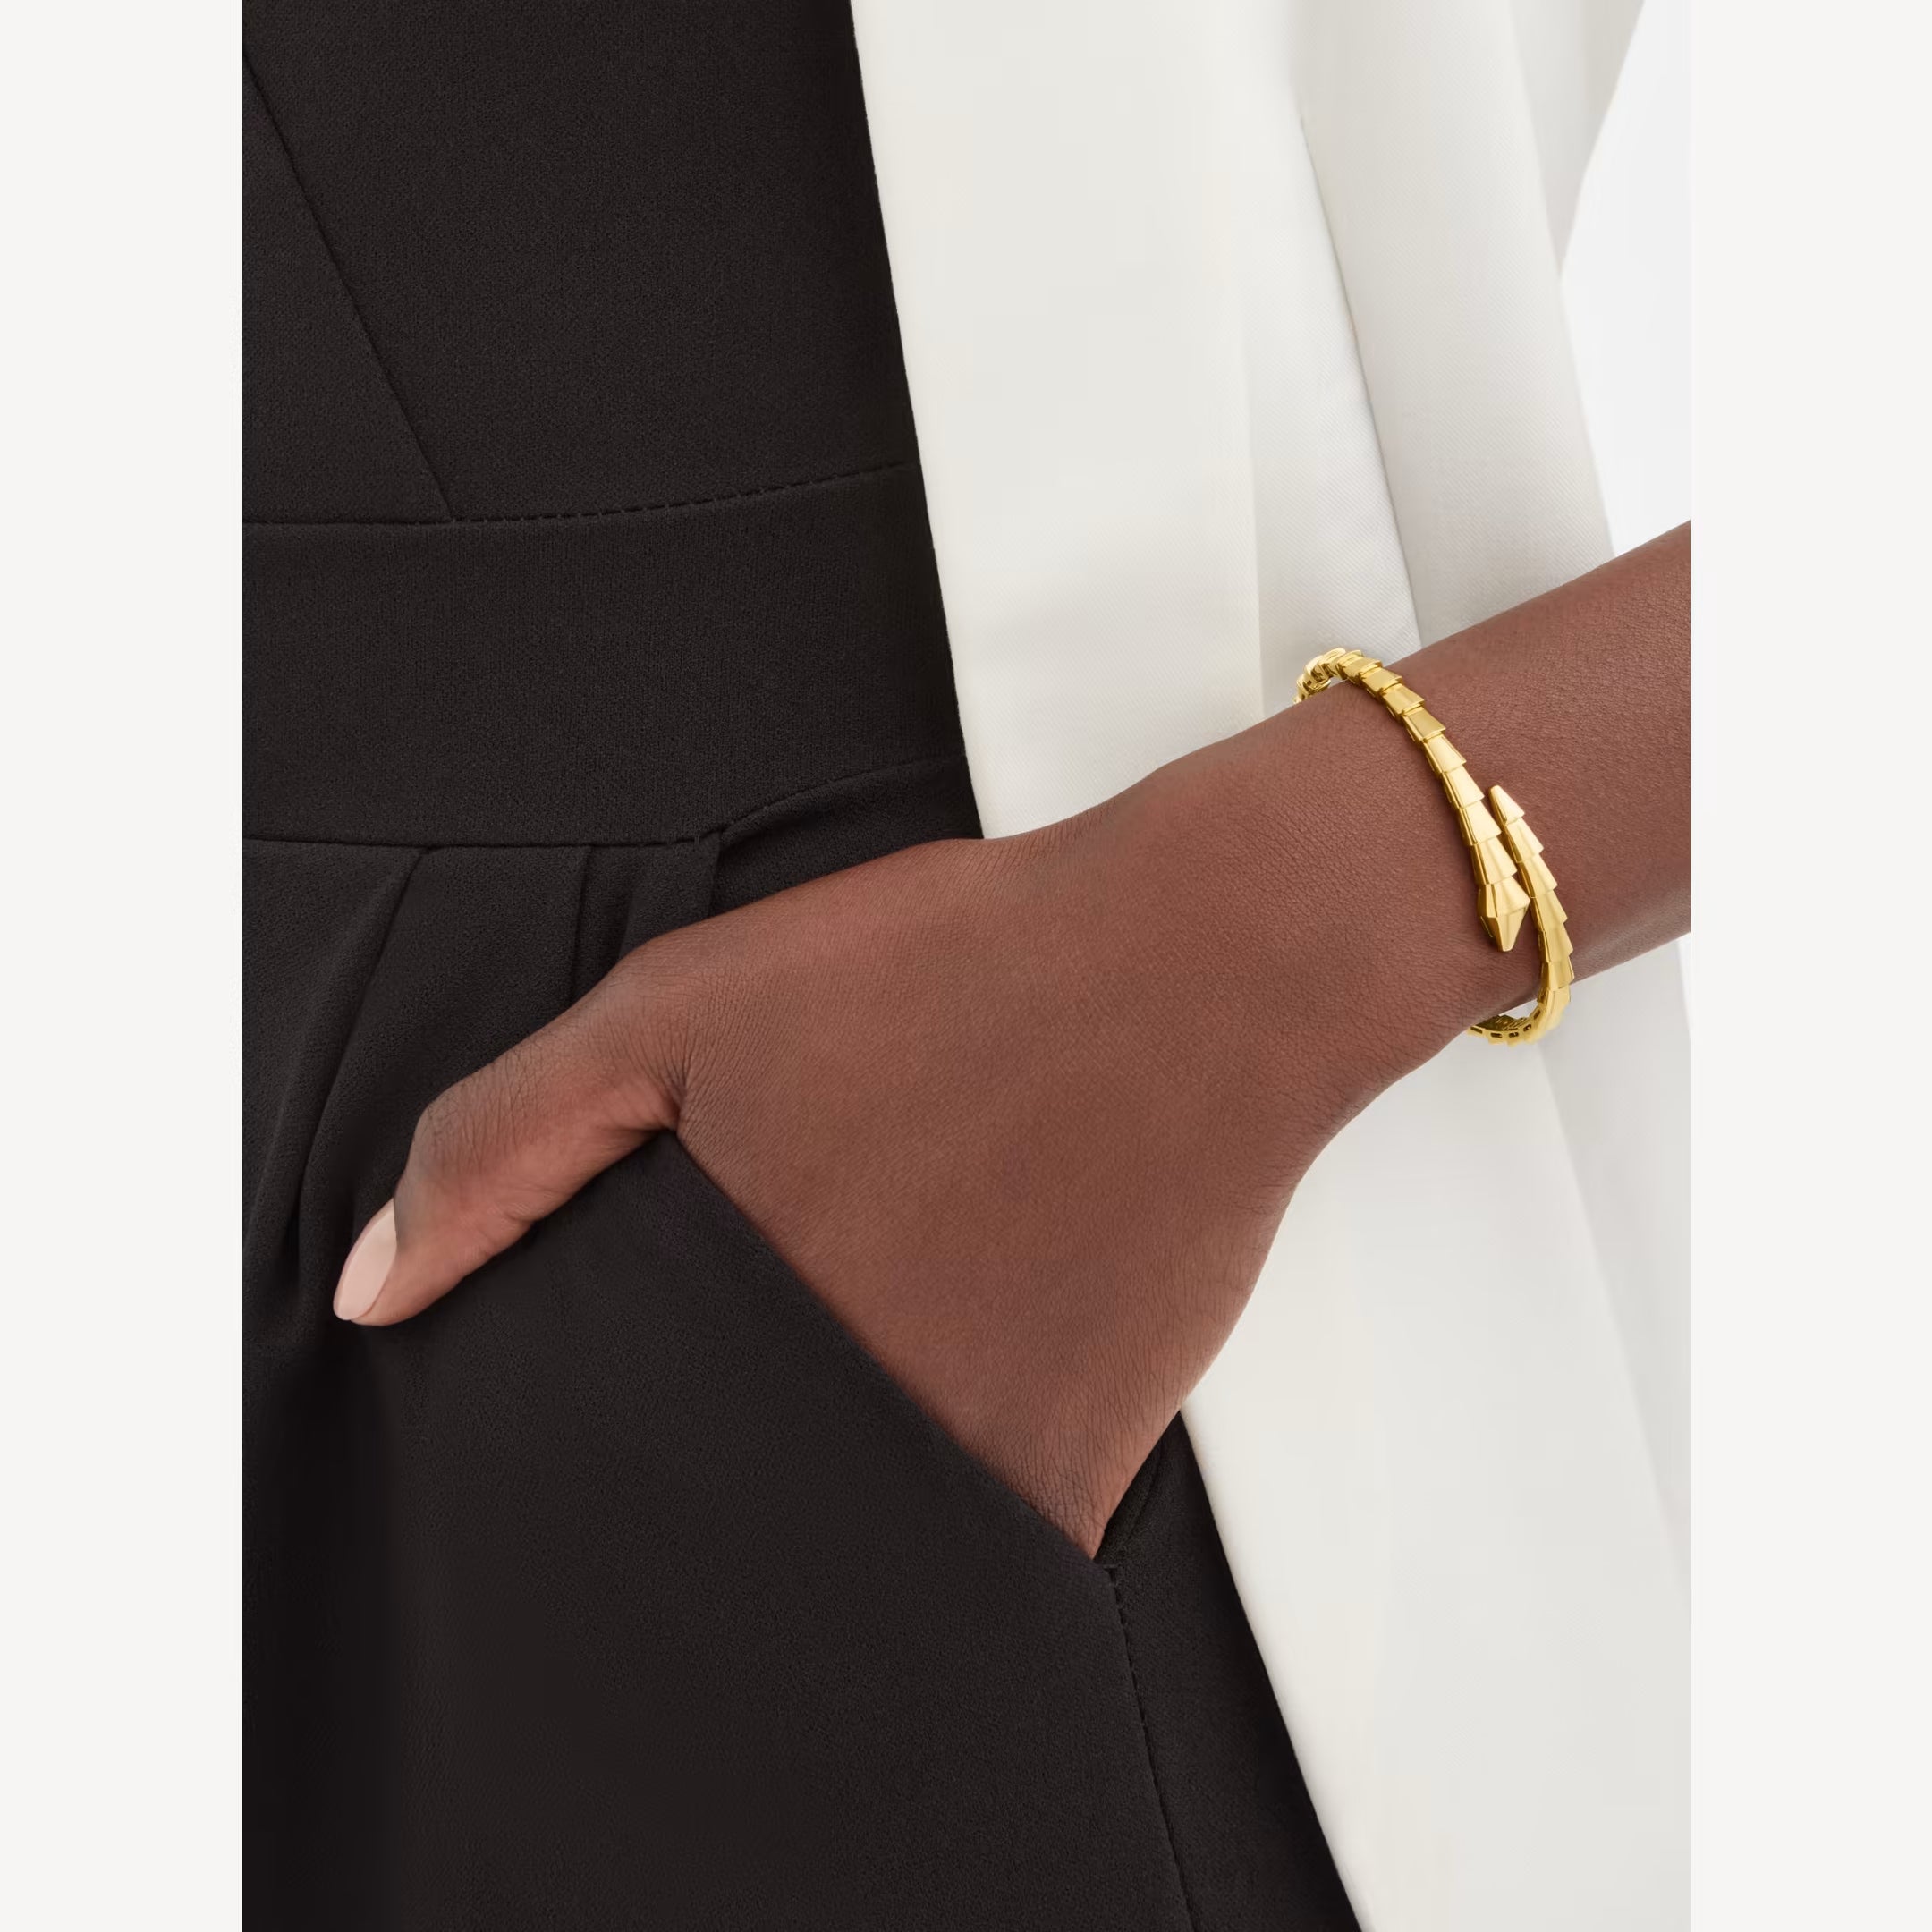 Textile bracelet with Karma Bead, cross style | THOMAS SABO